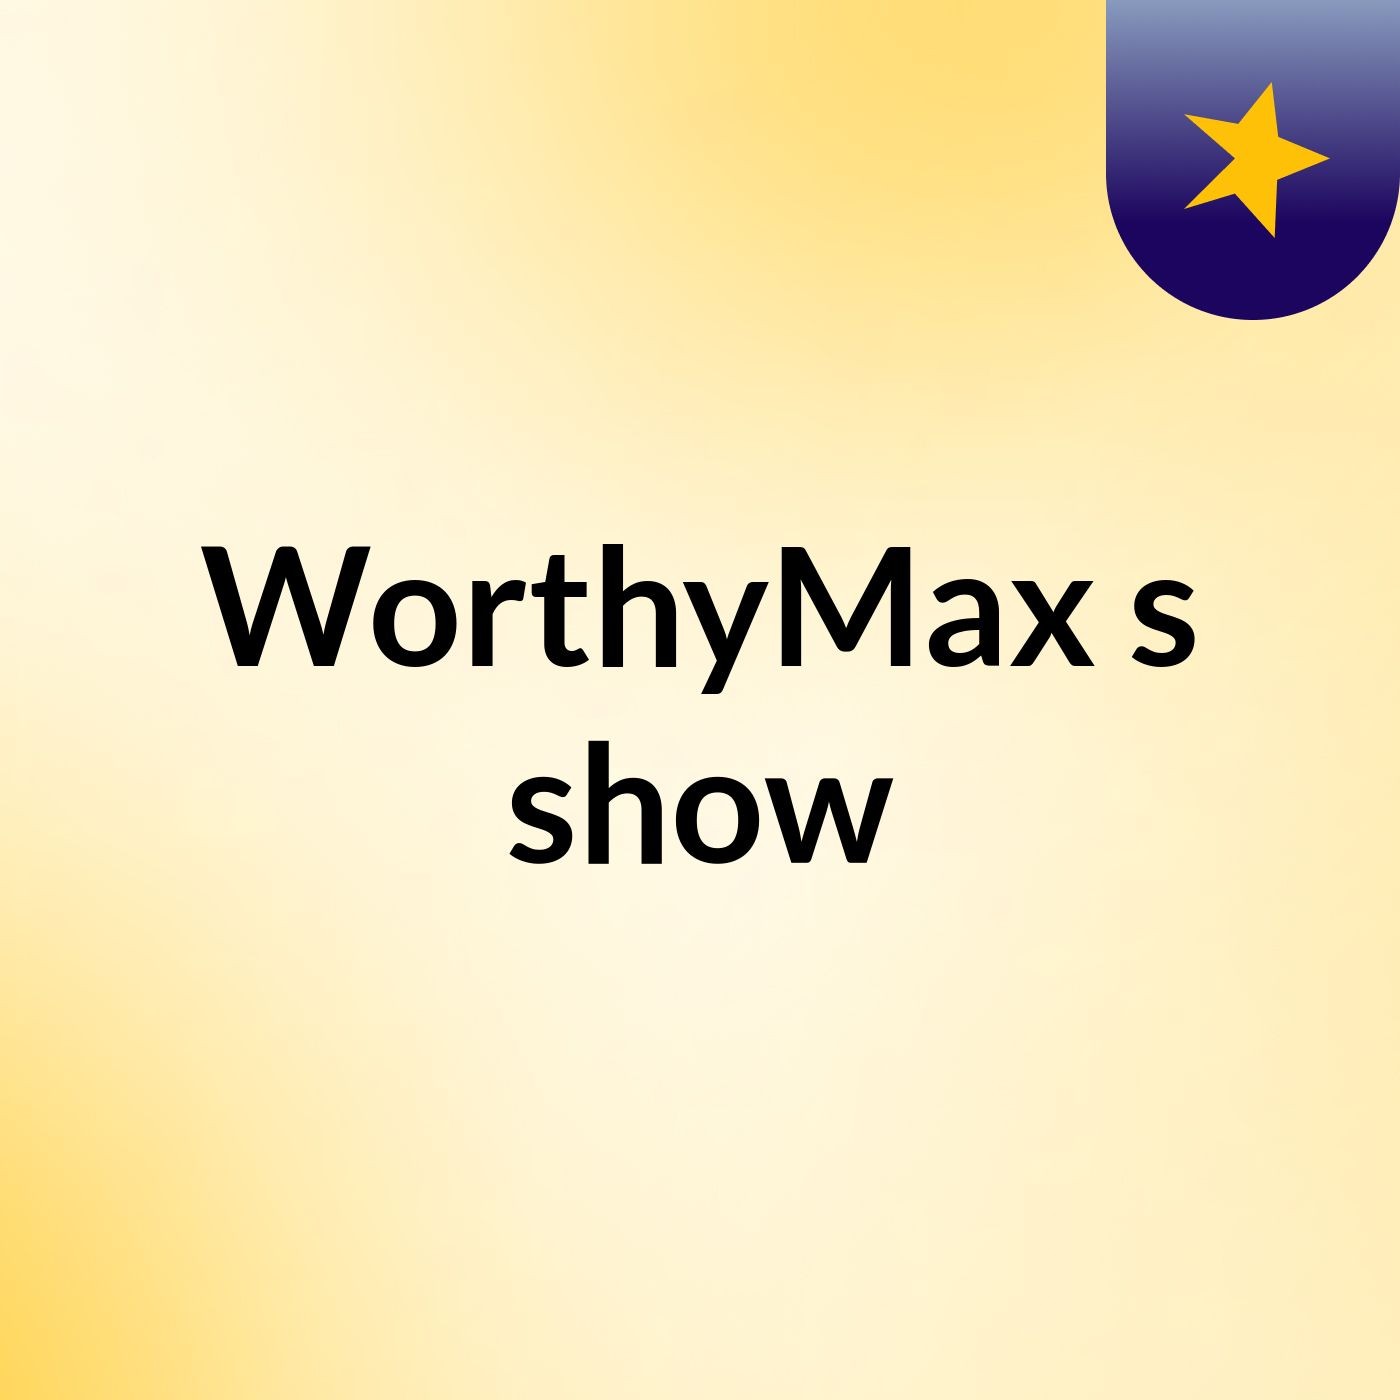 WorthyMax's show